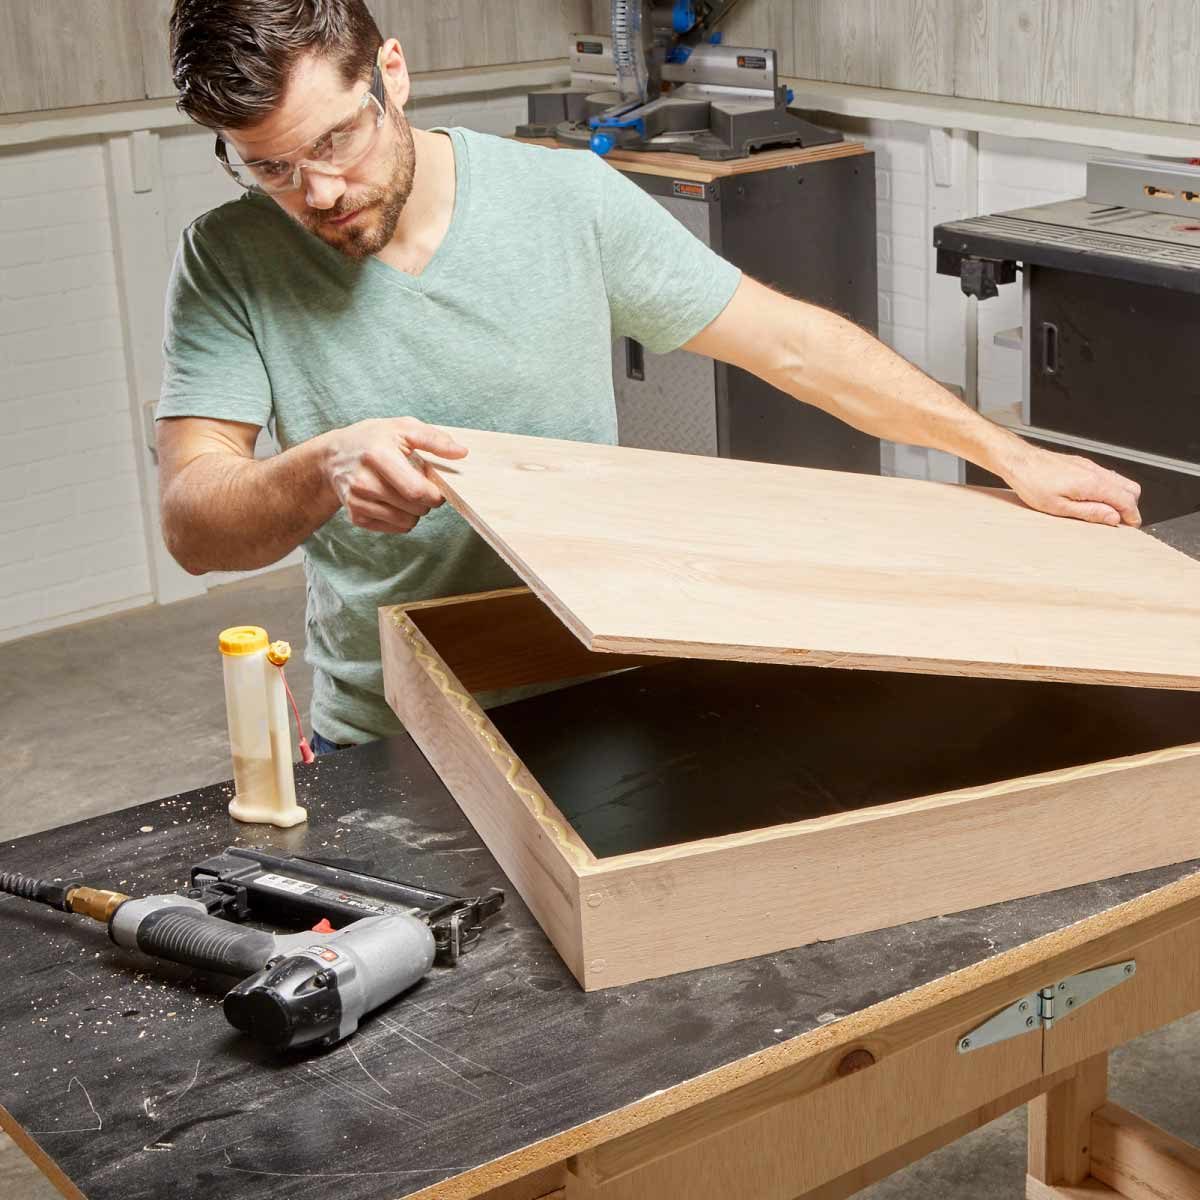 DIY Dartboard Cabinet – The Inspired Workshop